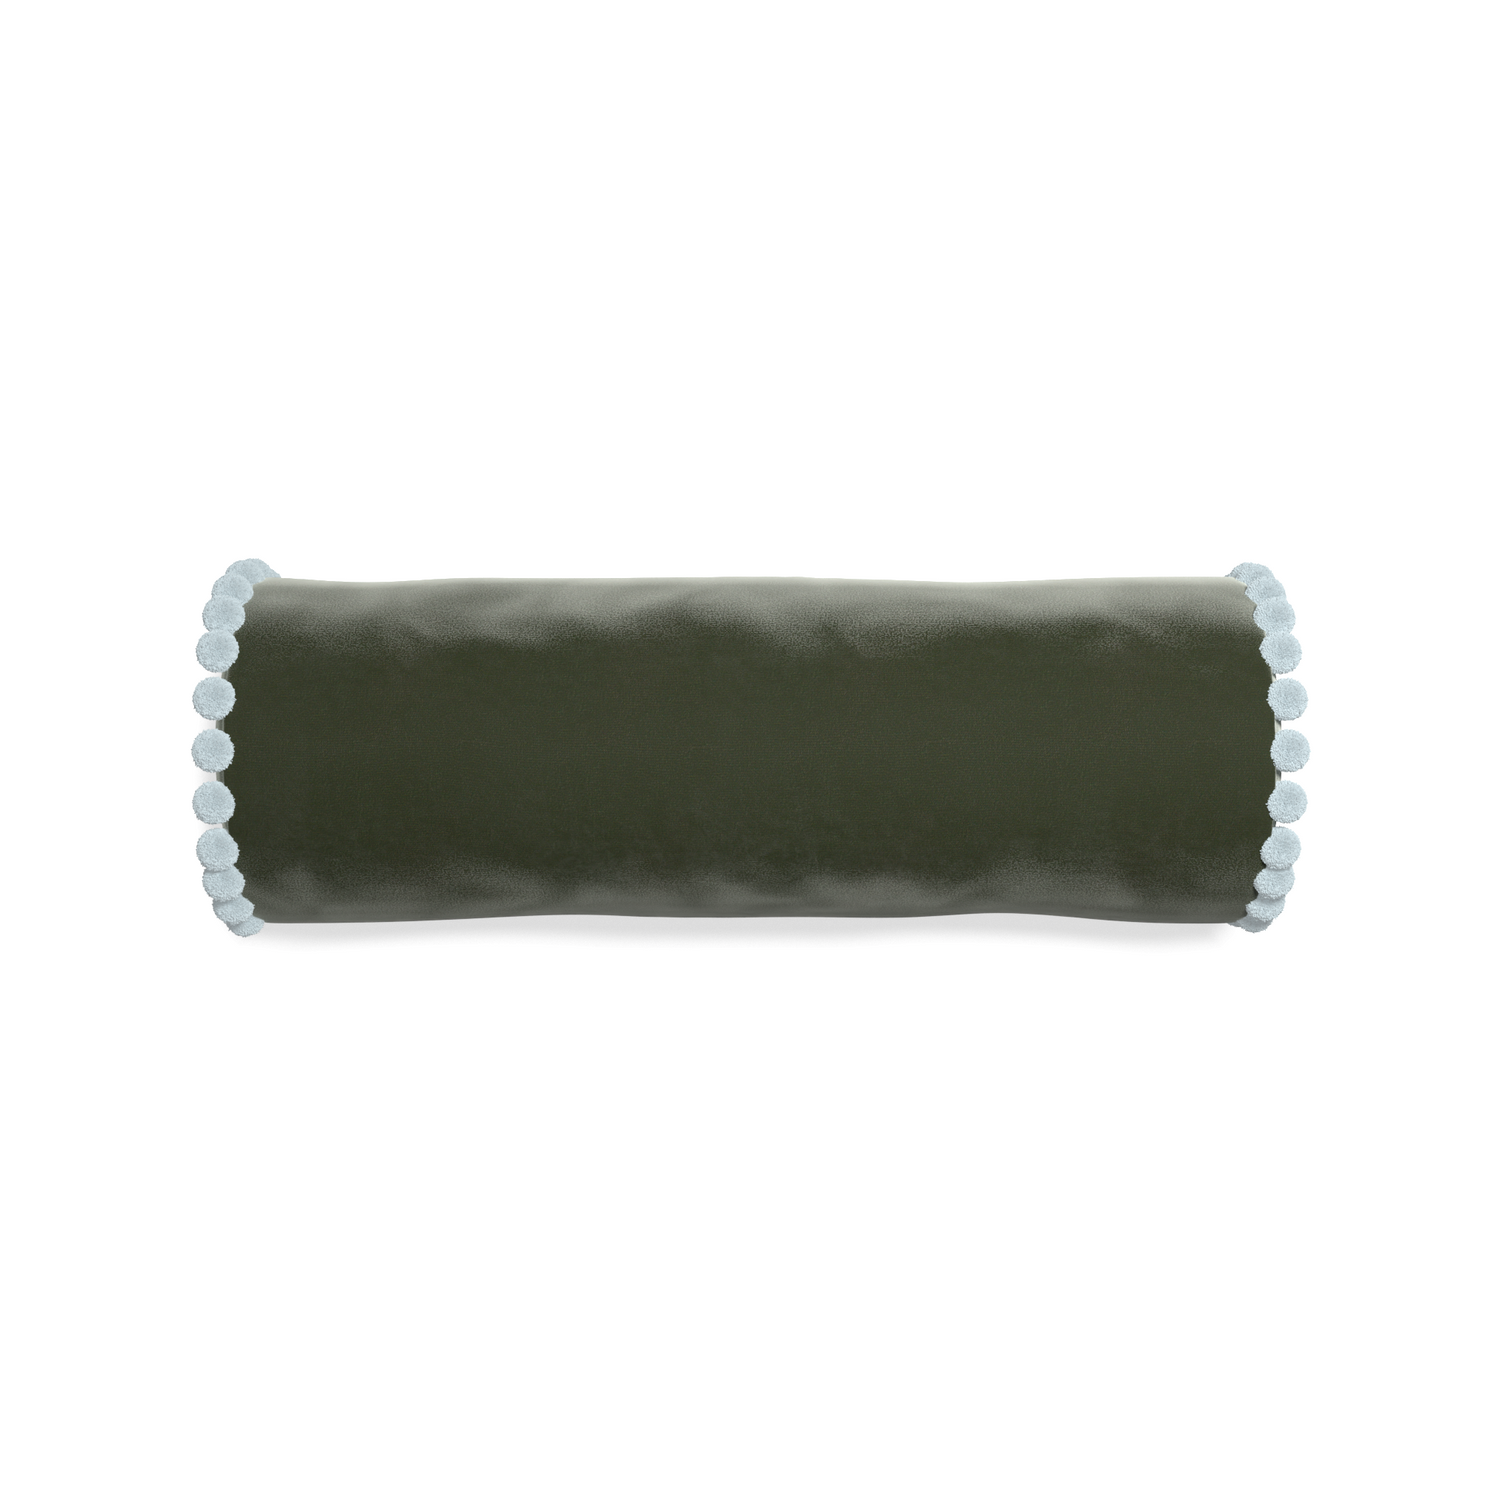 bolster fern green velvet pillow with light blue pom poms